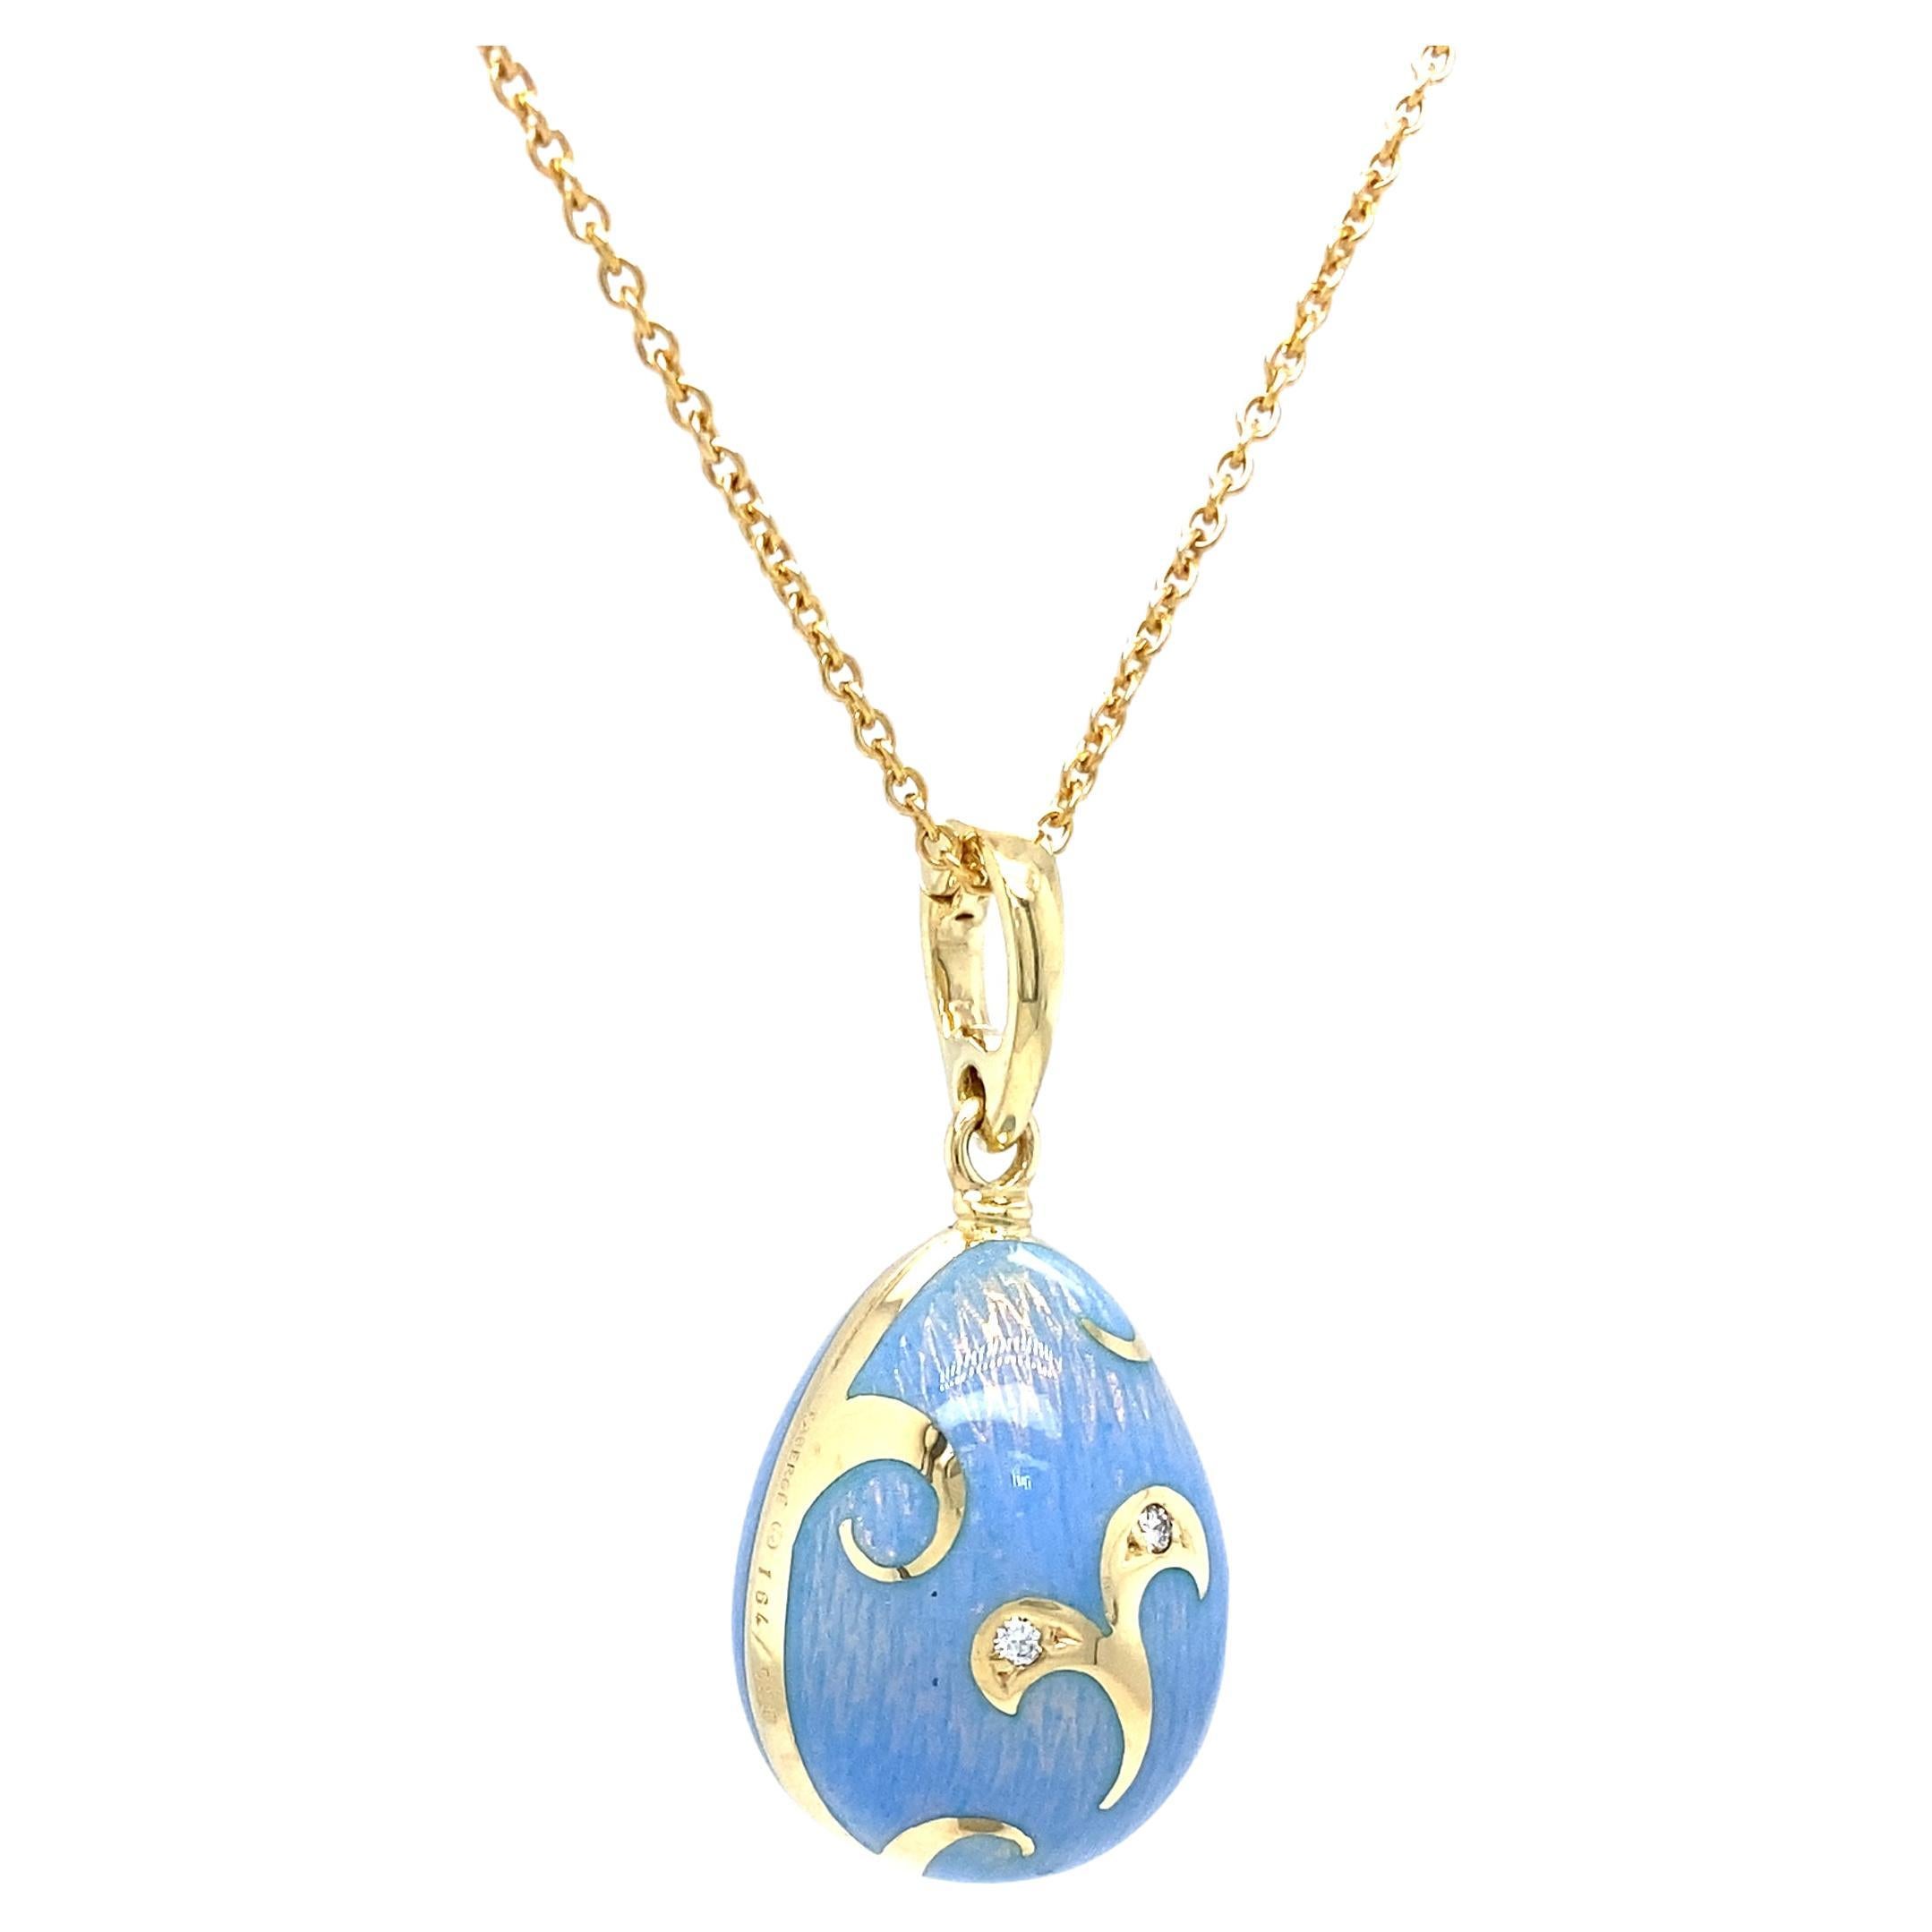 Brilliant Cut Fabergé Egg Pendant Necklace Blue Opalescent Enamel 18k Yellow Gold 2 Diamonds For Sale